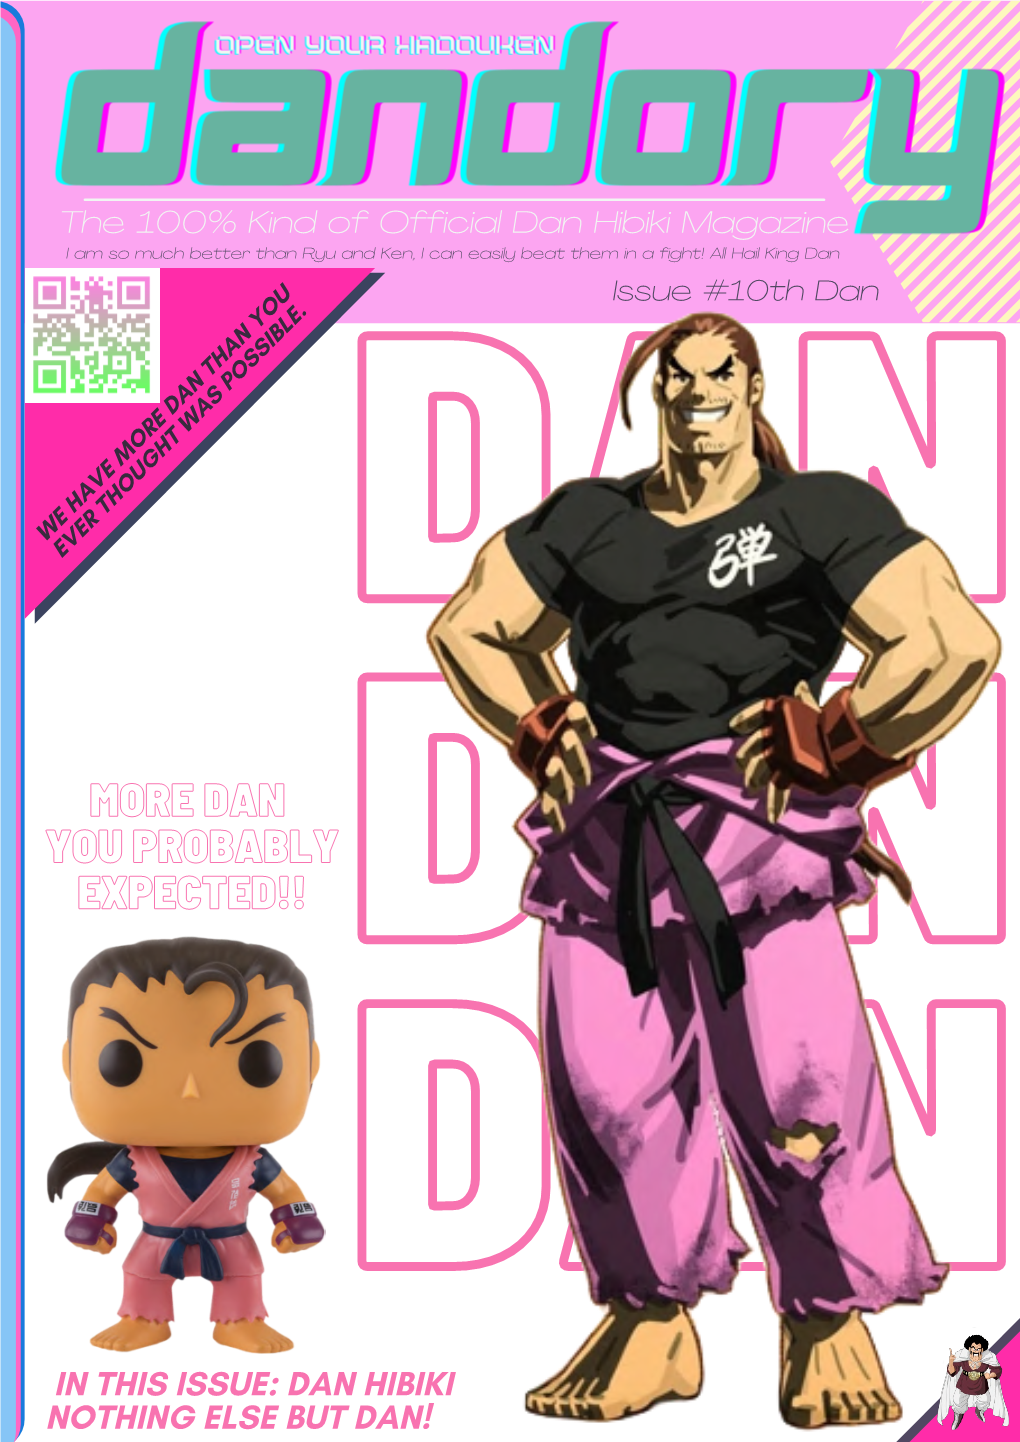 DAN YOU PROBABLY EXPECTED!! DAN DAN in THIS ISSUE: DAN HIBIKI NOTHING ELSE but DAN! the 100% Official Dan Hibiki Magazine